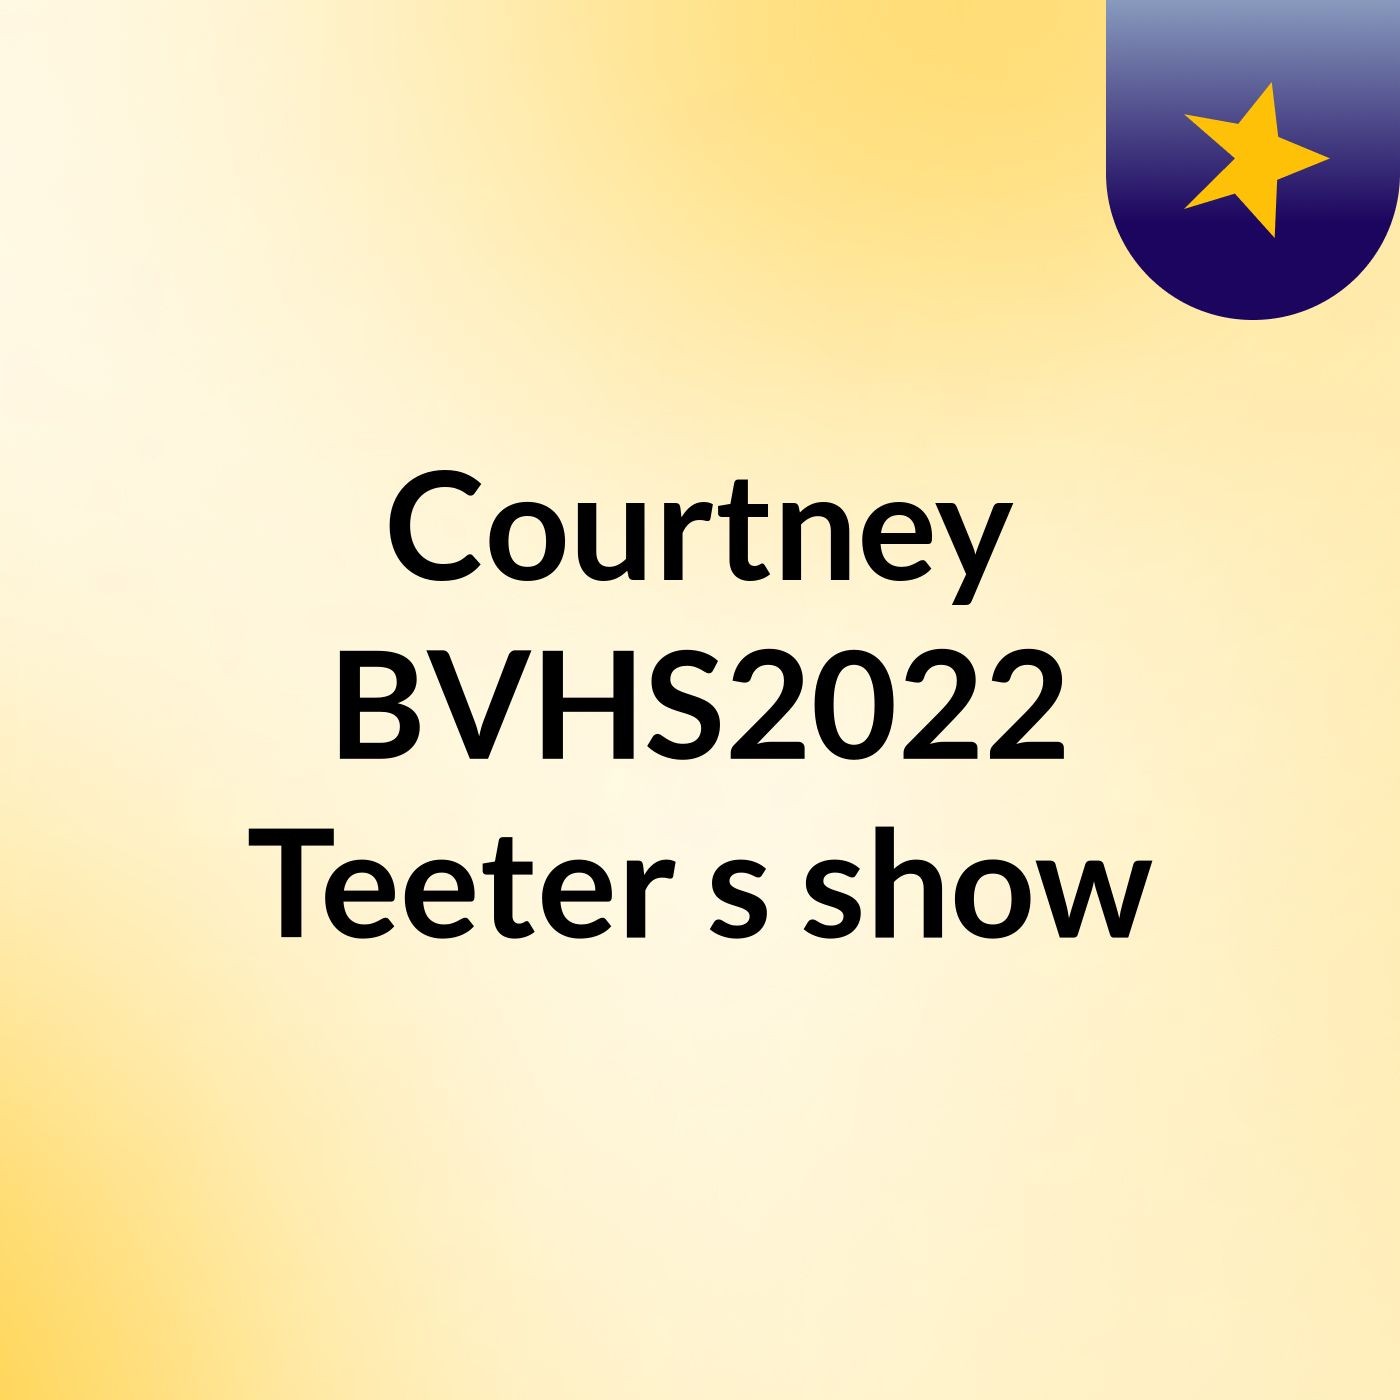 Episode 3 - Courtney BVHS2022 Teeter's show